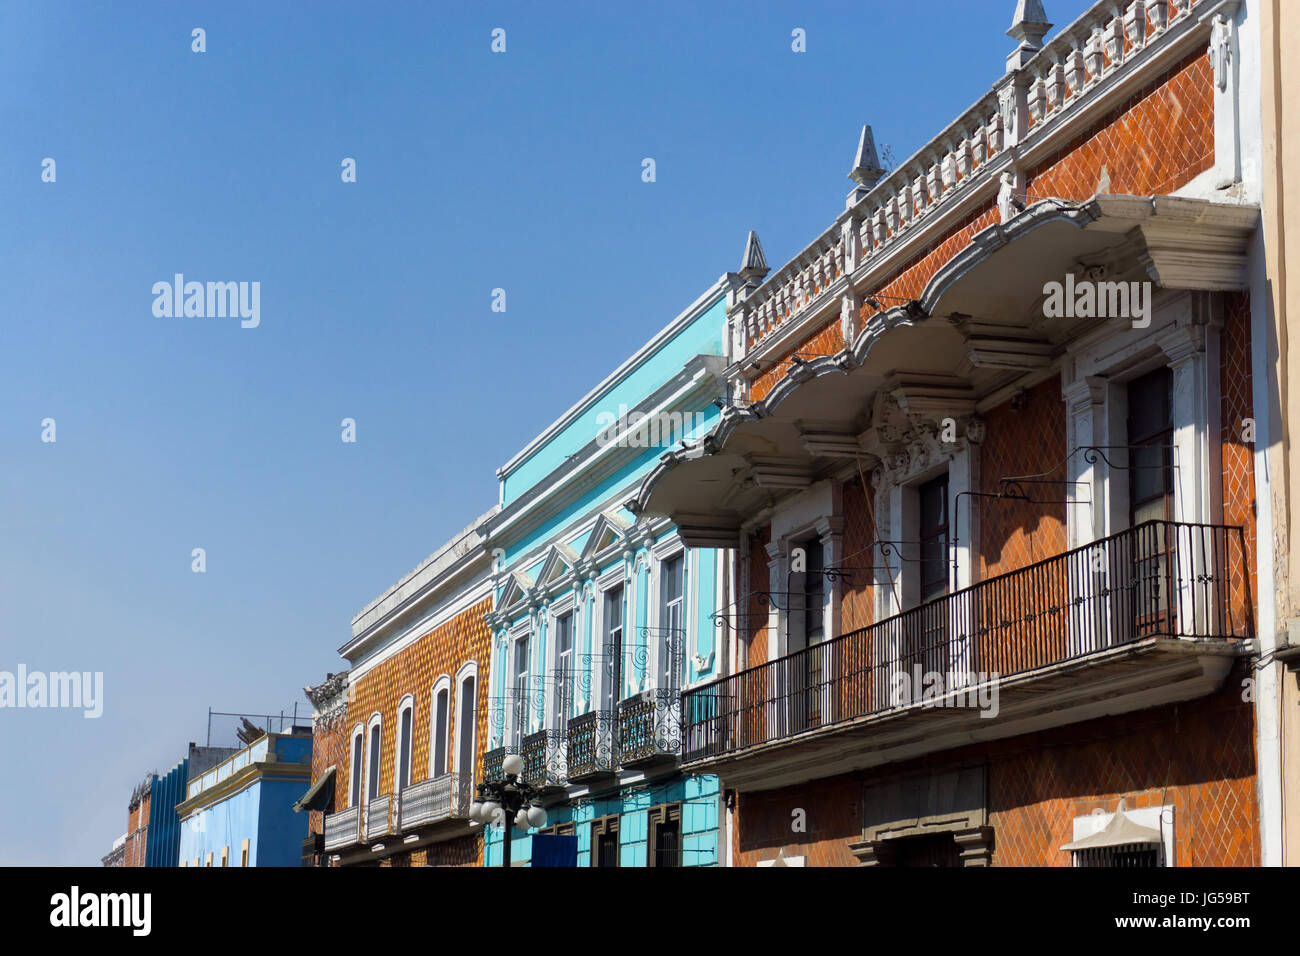 Vue d'un bâtiment coloré avec des balcons à Puebla, Mexique Banque D'Images